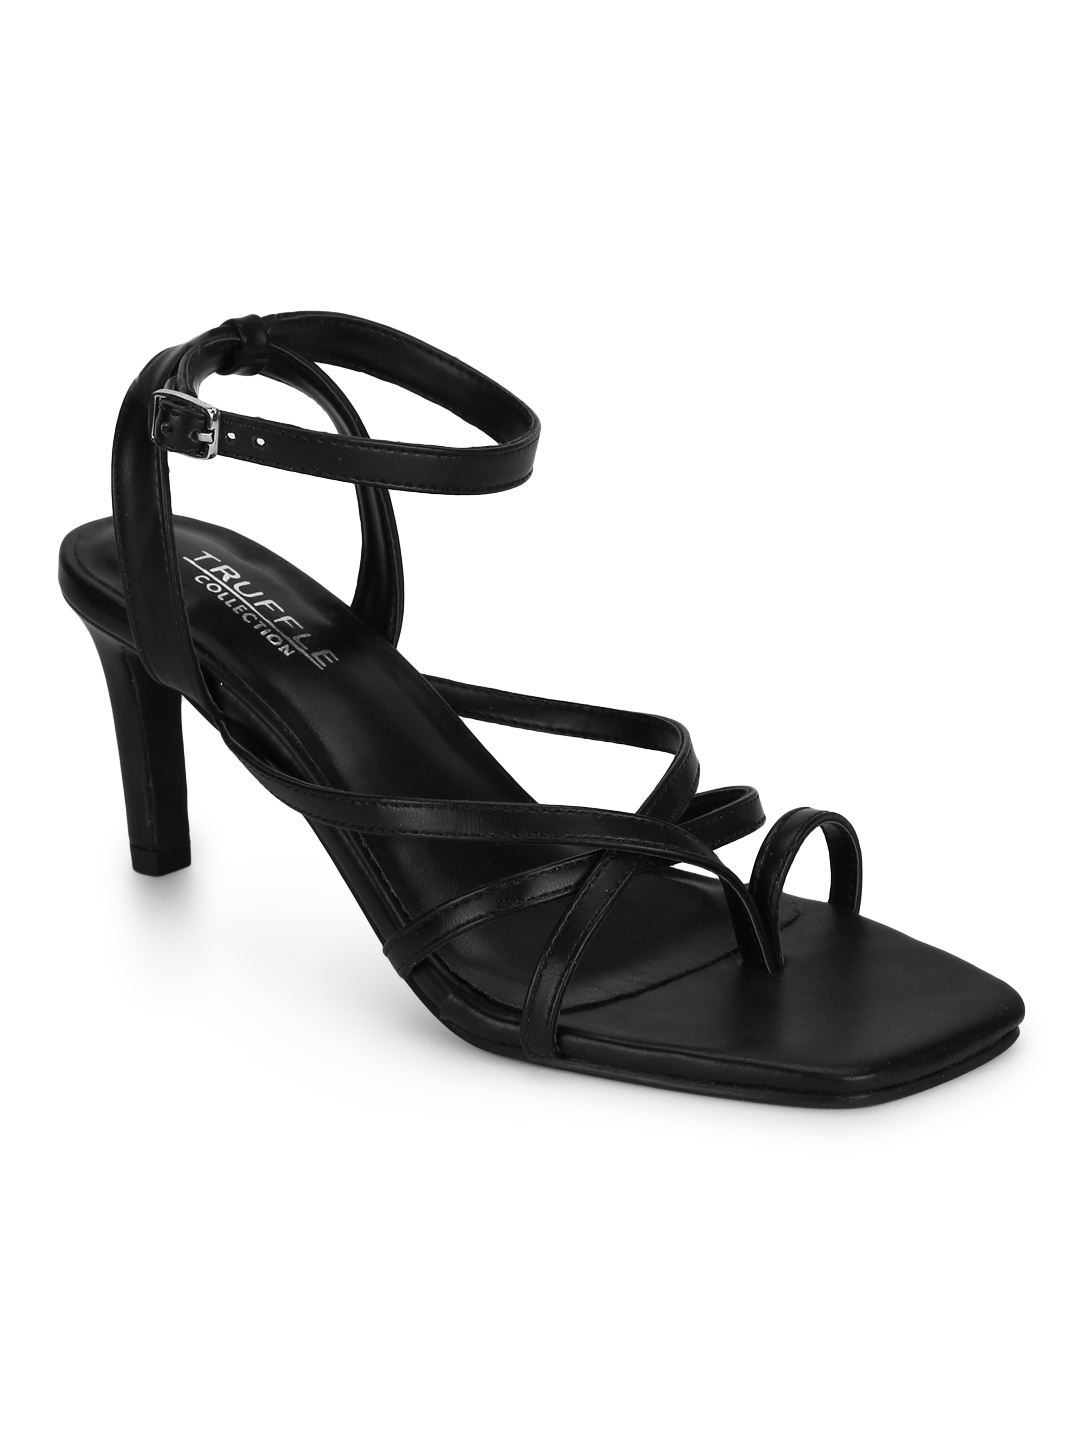 Black PU Strappy Stiletto Sandals